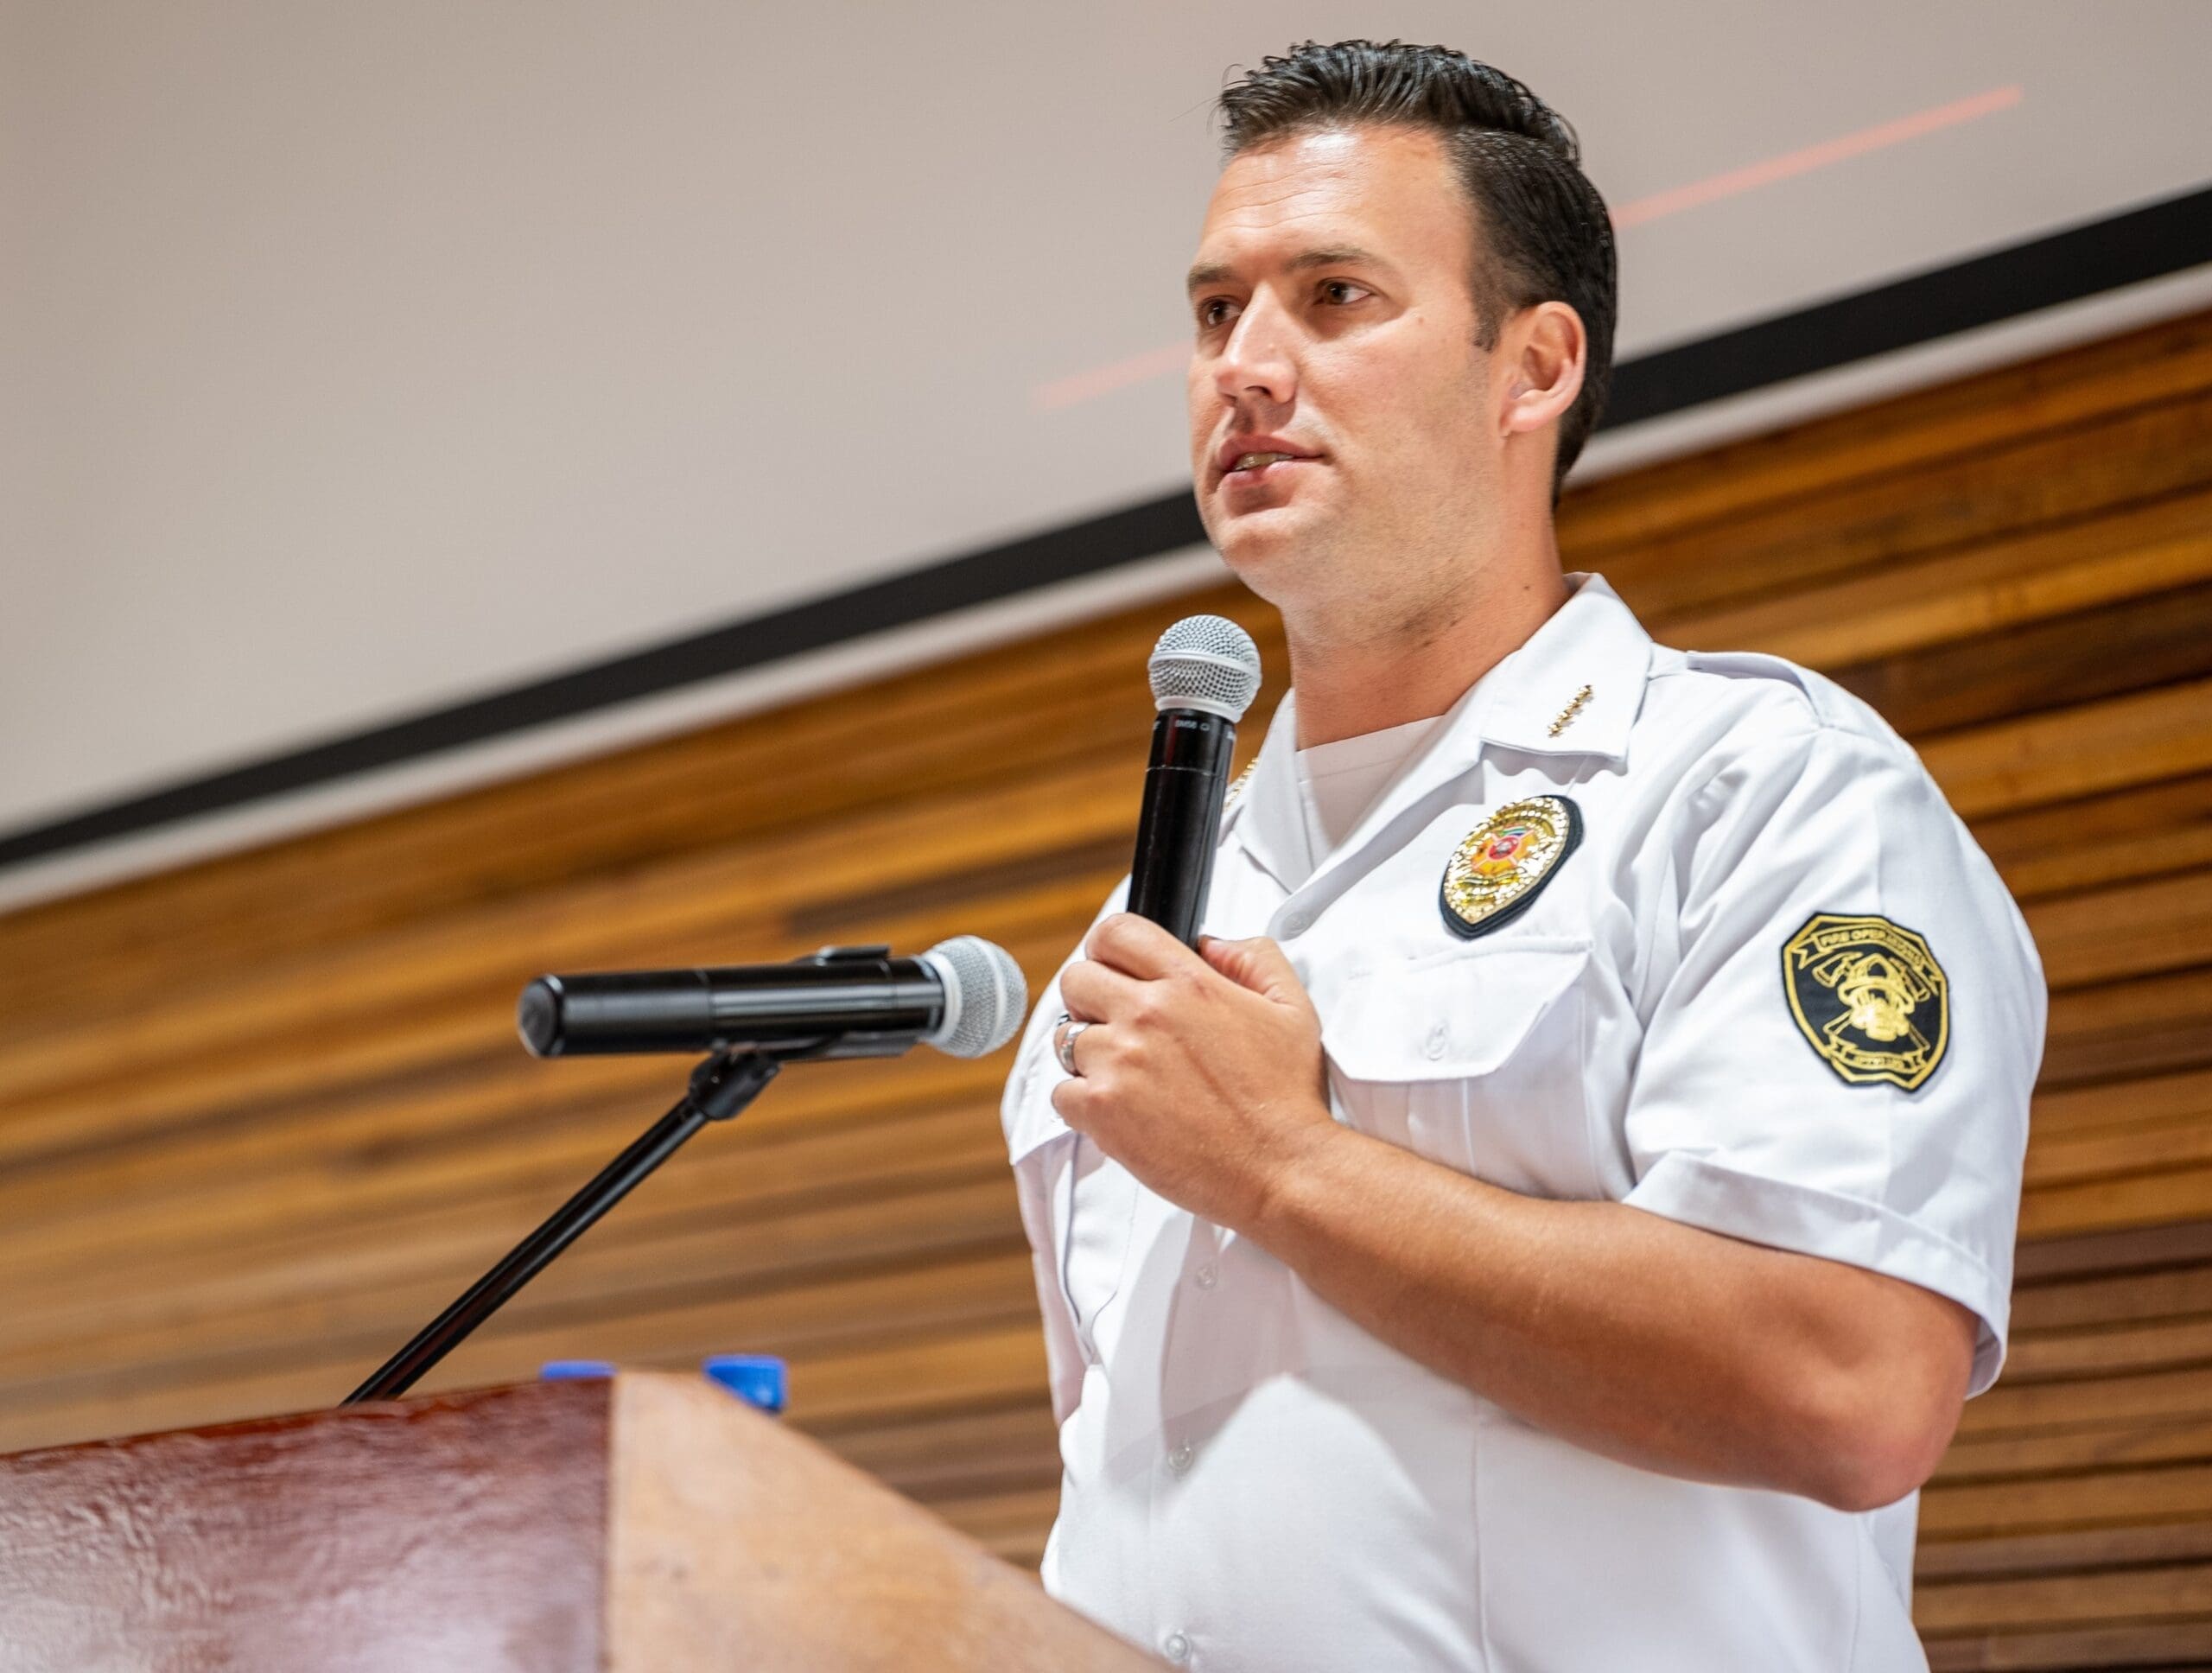 De Wet Engelbrecht, an experienced firefighter and CEO of Fire Operations